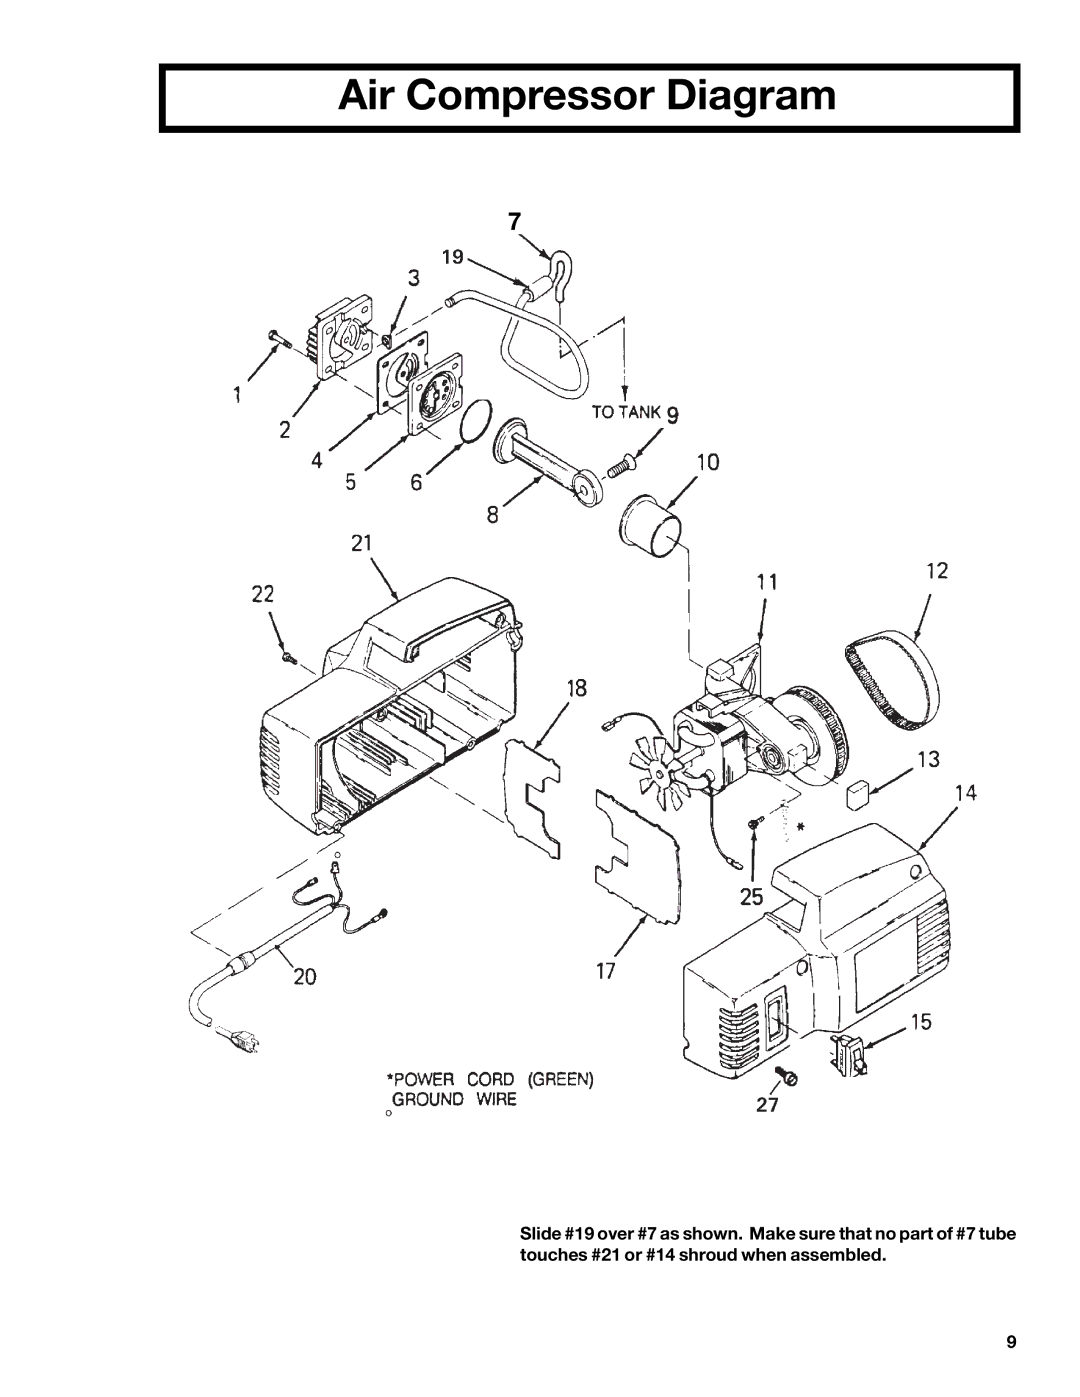 DeVillbiss Air Power Company MGP-102D-2, C102D-1 owner manual Air Compressor Diagram 